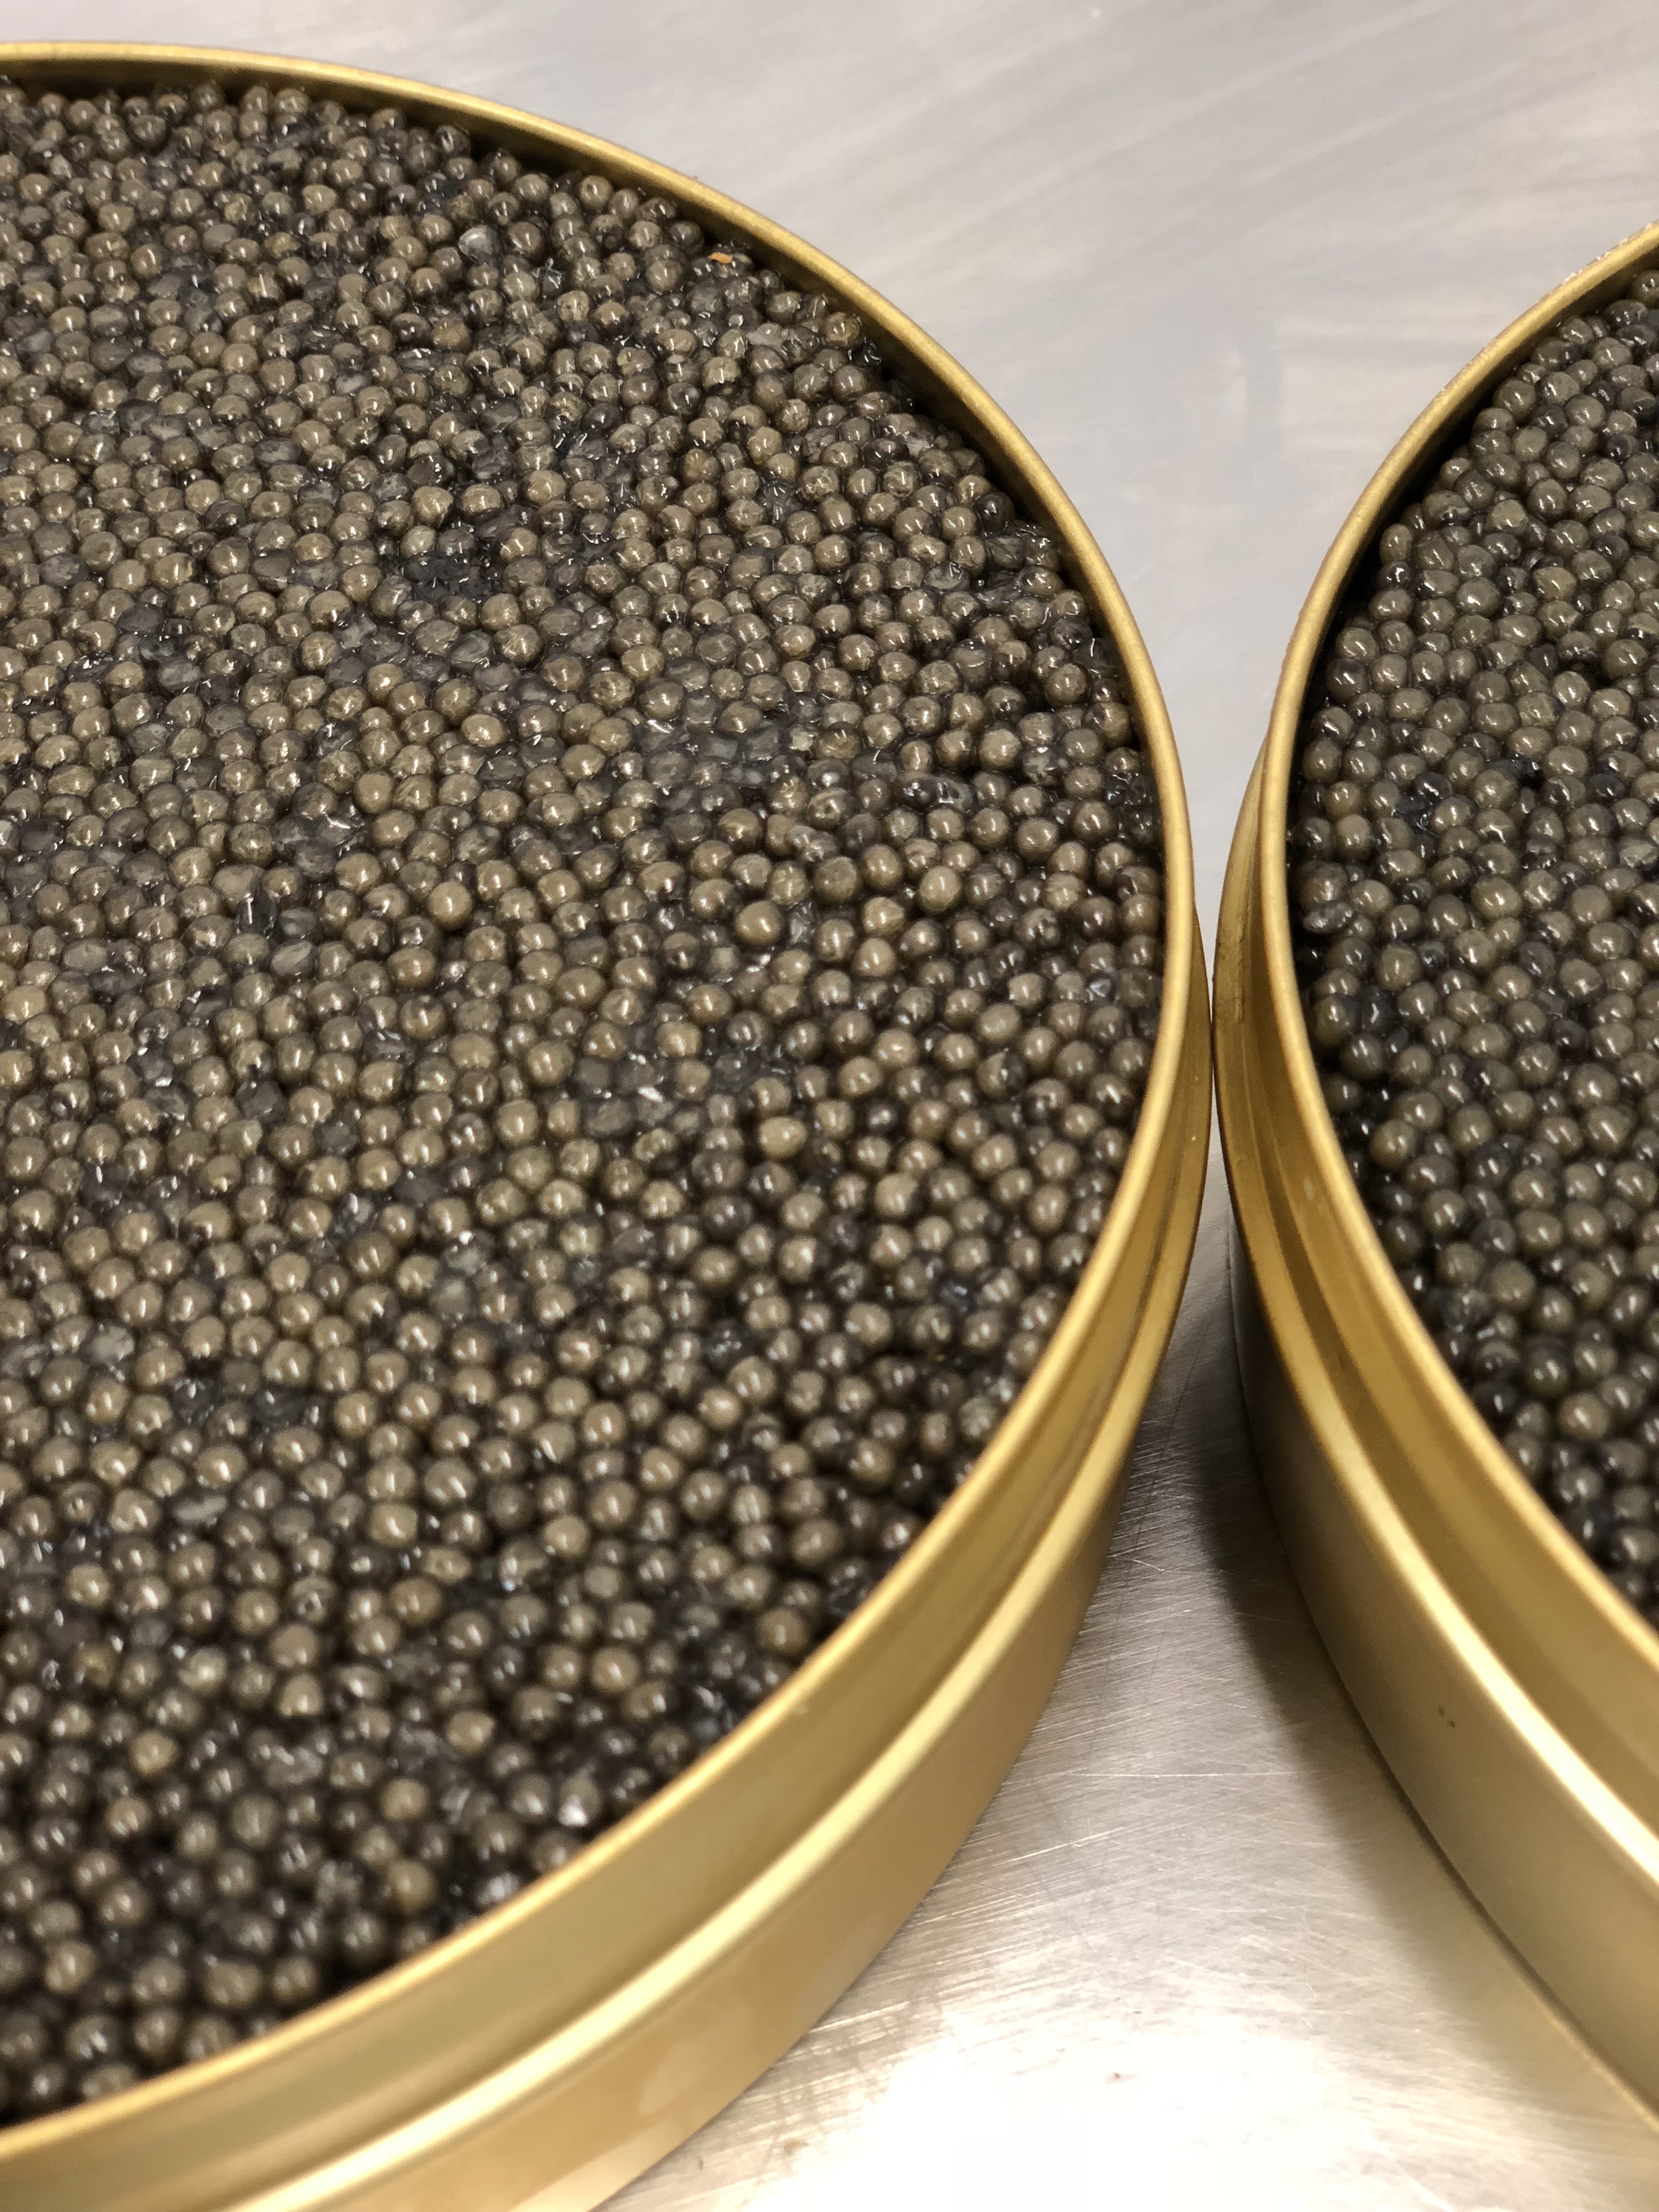 https://www.kingsfinefood.co.uk/kings-shop/wp-content/uploads/2019/11/Caviar-Facts.jpg